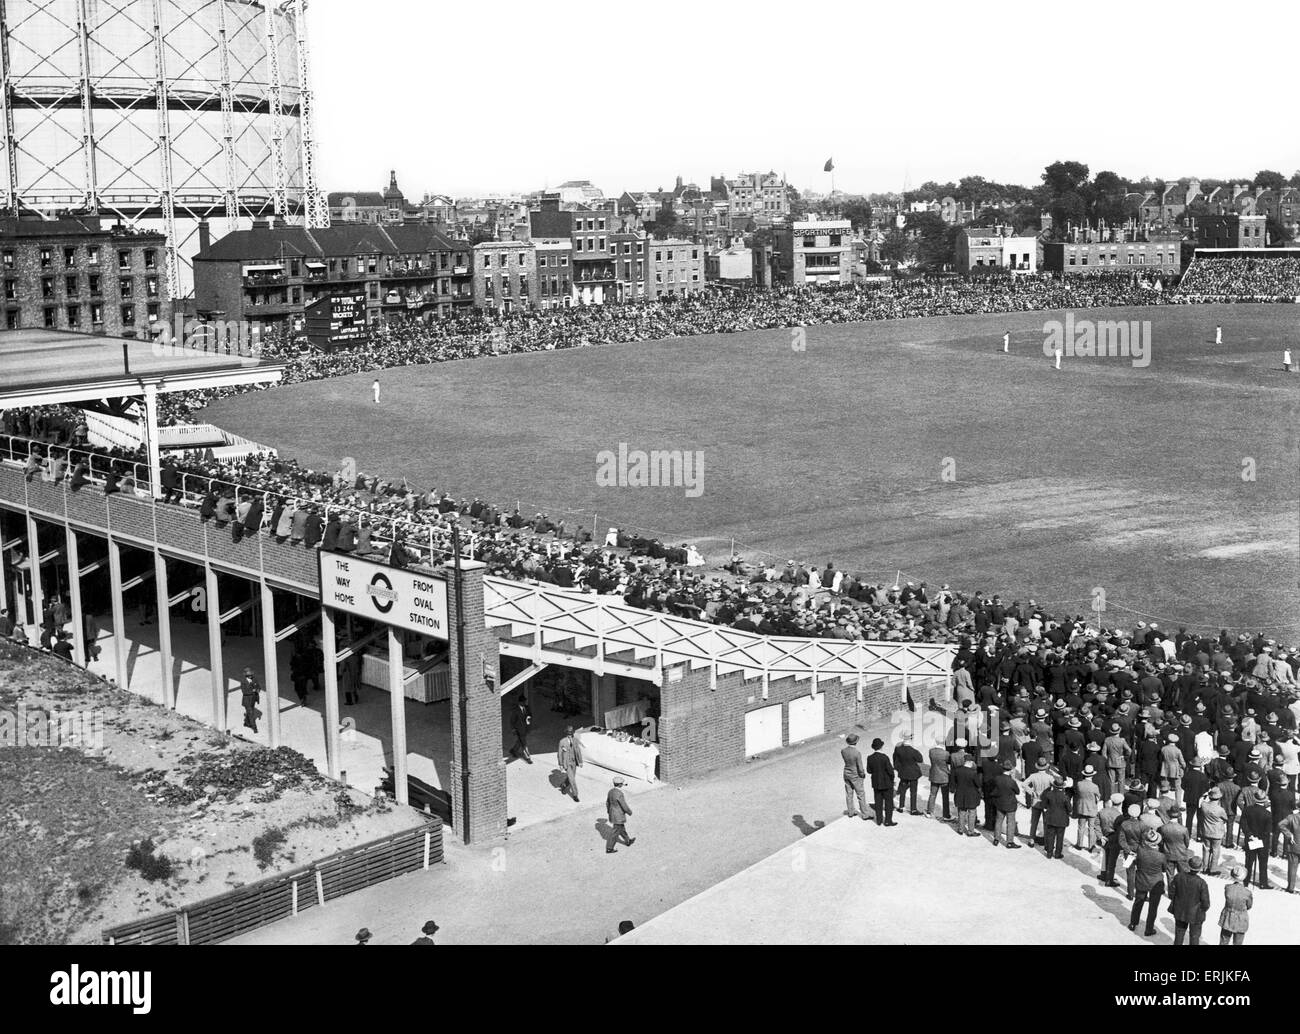 Vue générale de l'Oval Cricket Ground. Août 1947. Banque D'Images